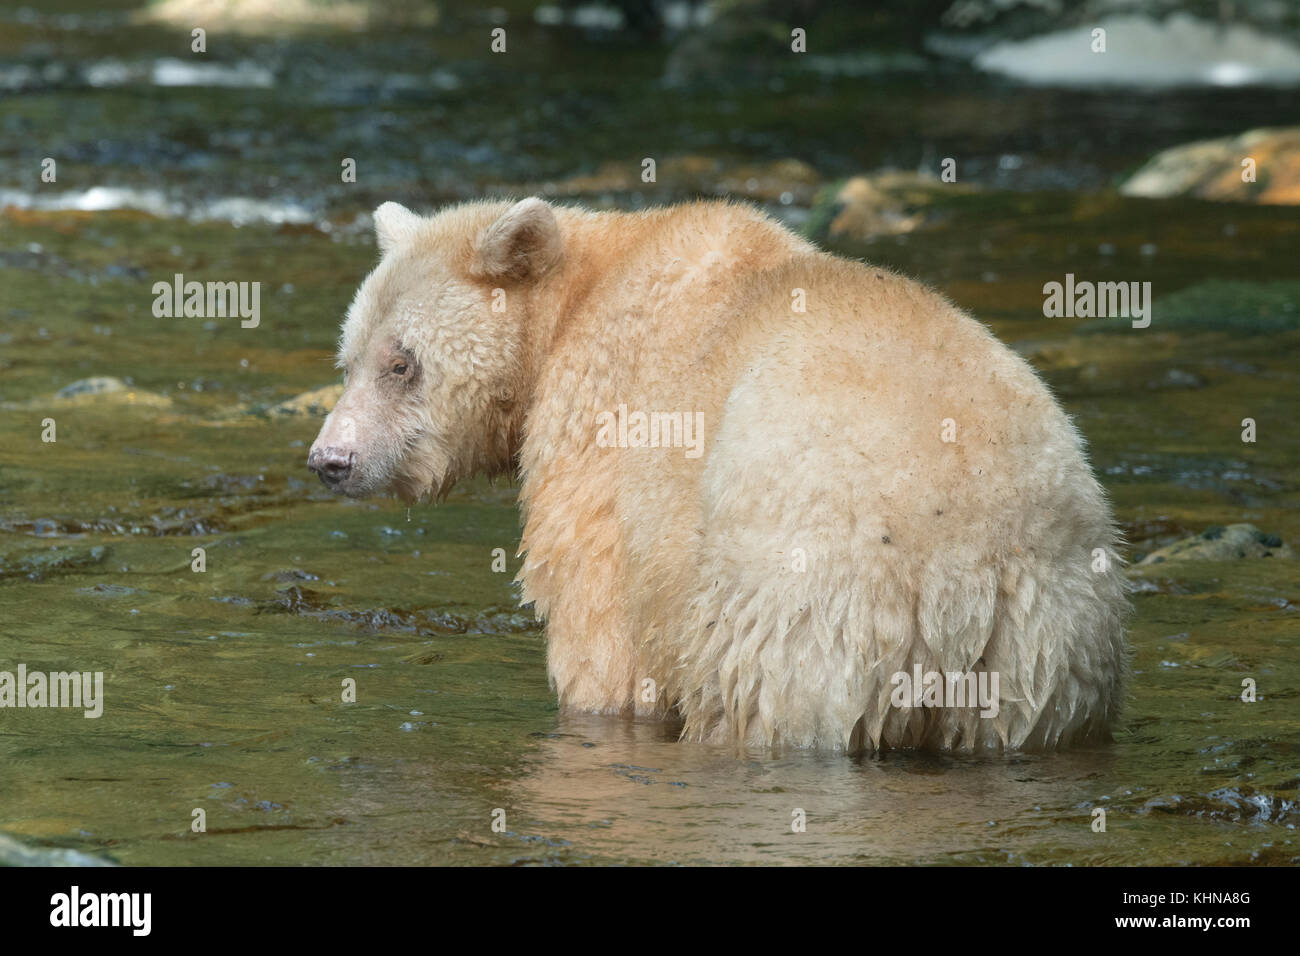 Kermode o "acquavite" Orso (Ursus americanus kermodei), bianco forma di american black bear, grande orso nella foresta pluviale, BC Canada Foto Stock